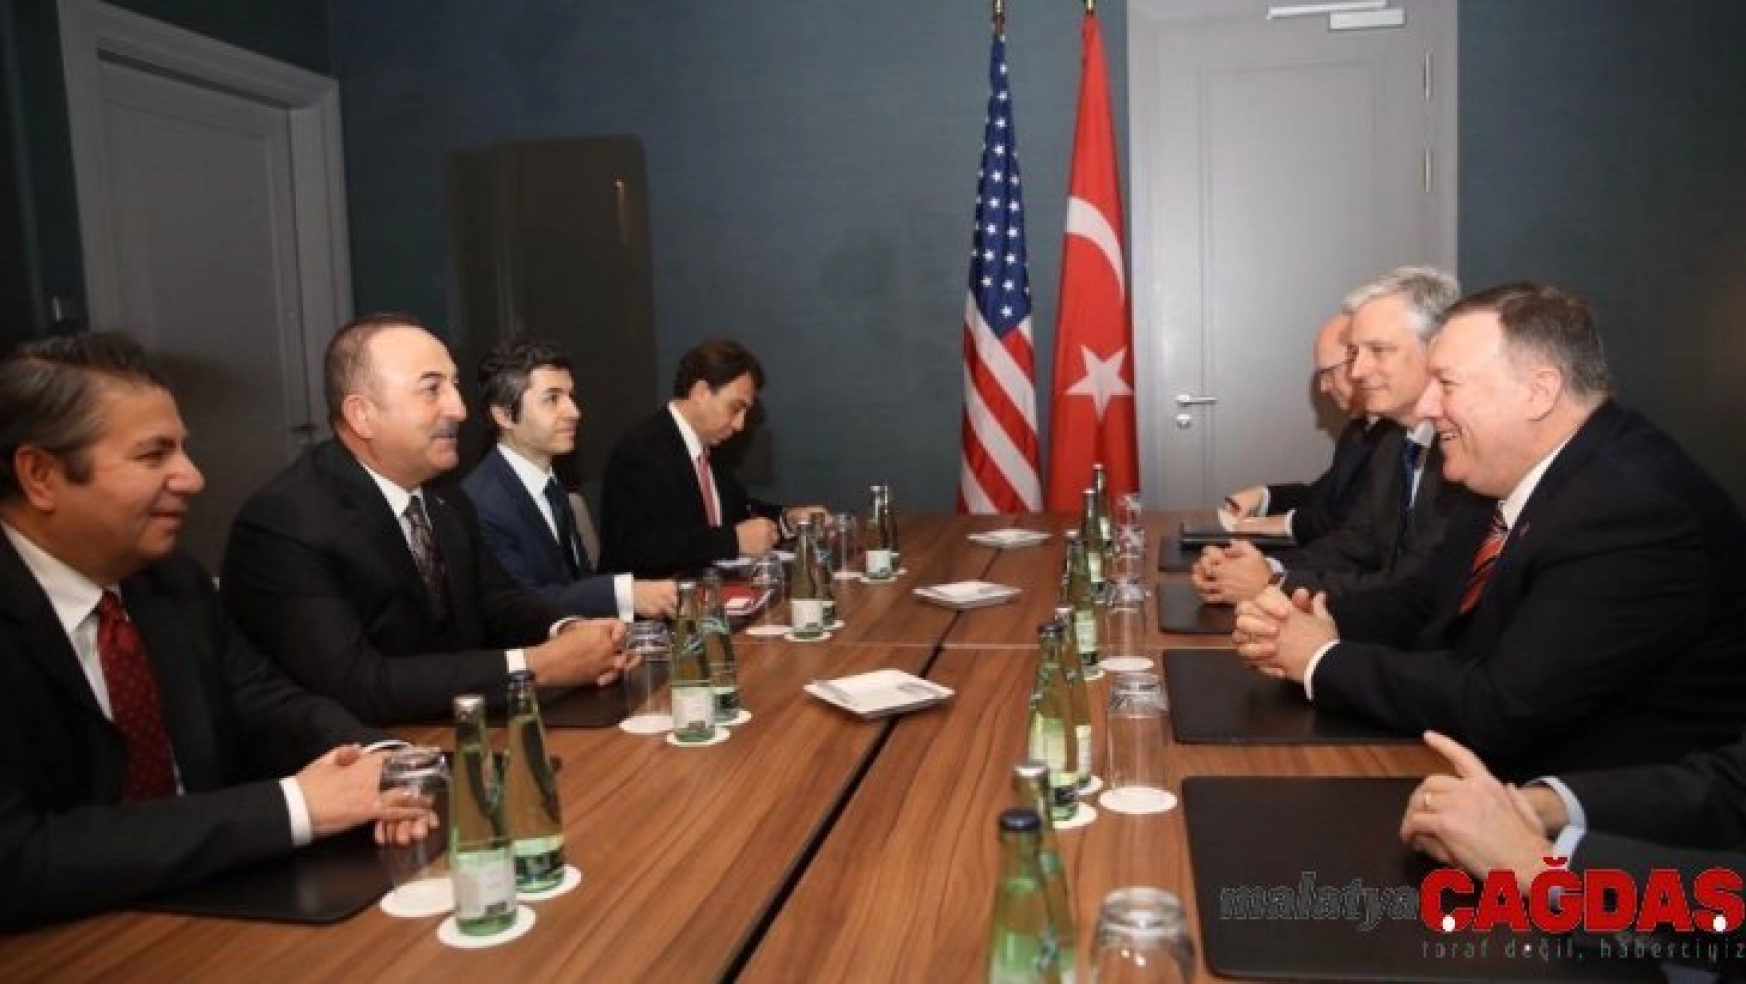 Bakan Çavuşoğlu, ABD'li mevkidaşı Pompeo ile görüştü